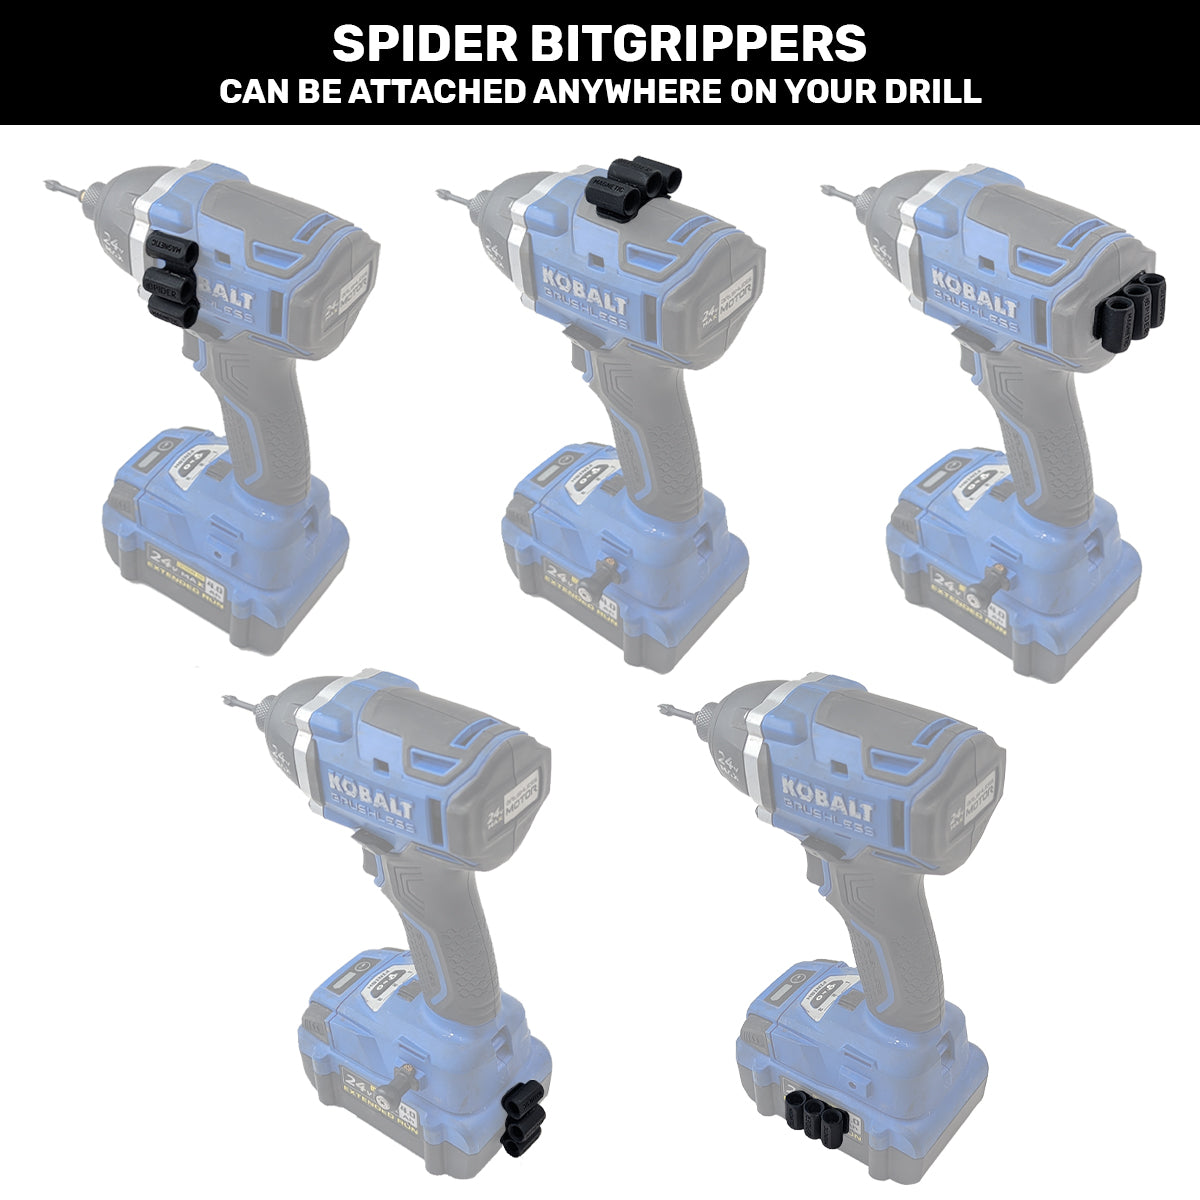 5120TH: BUNDLE - 2 BitGripper v2 + 2 Magnetic BitGripper